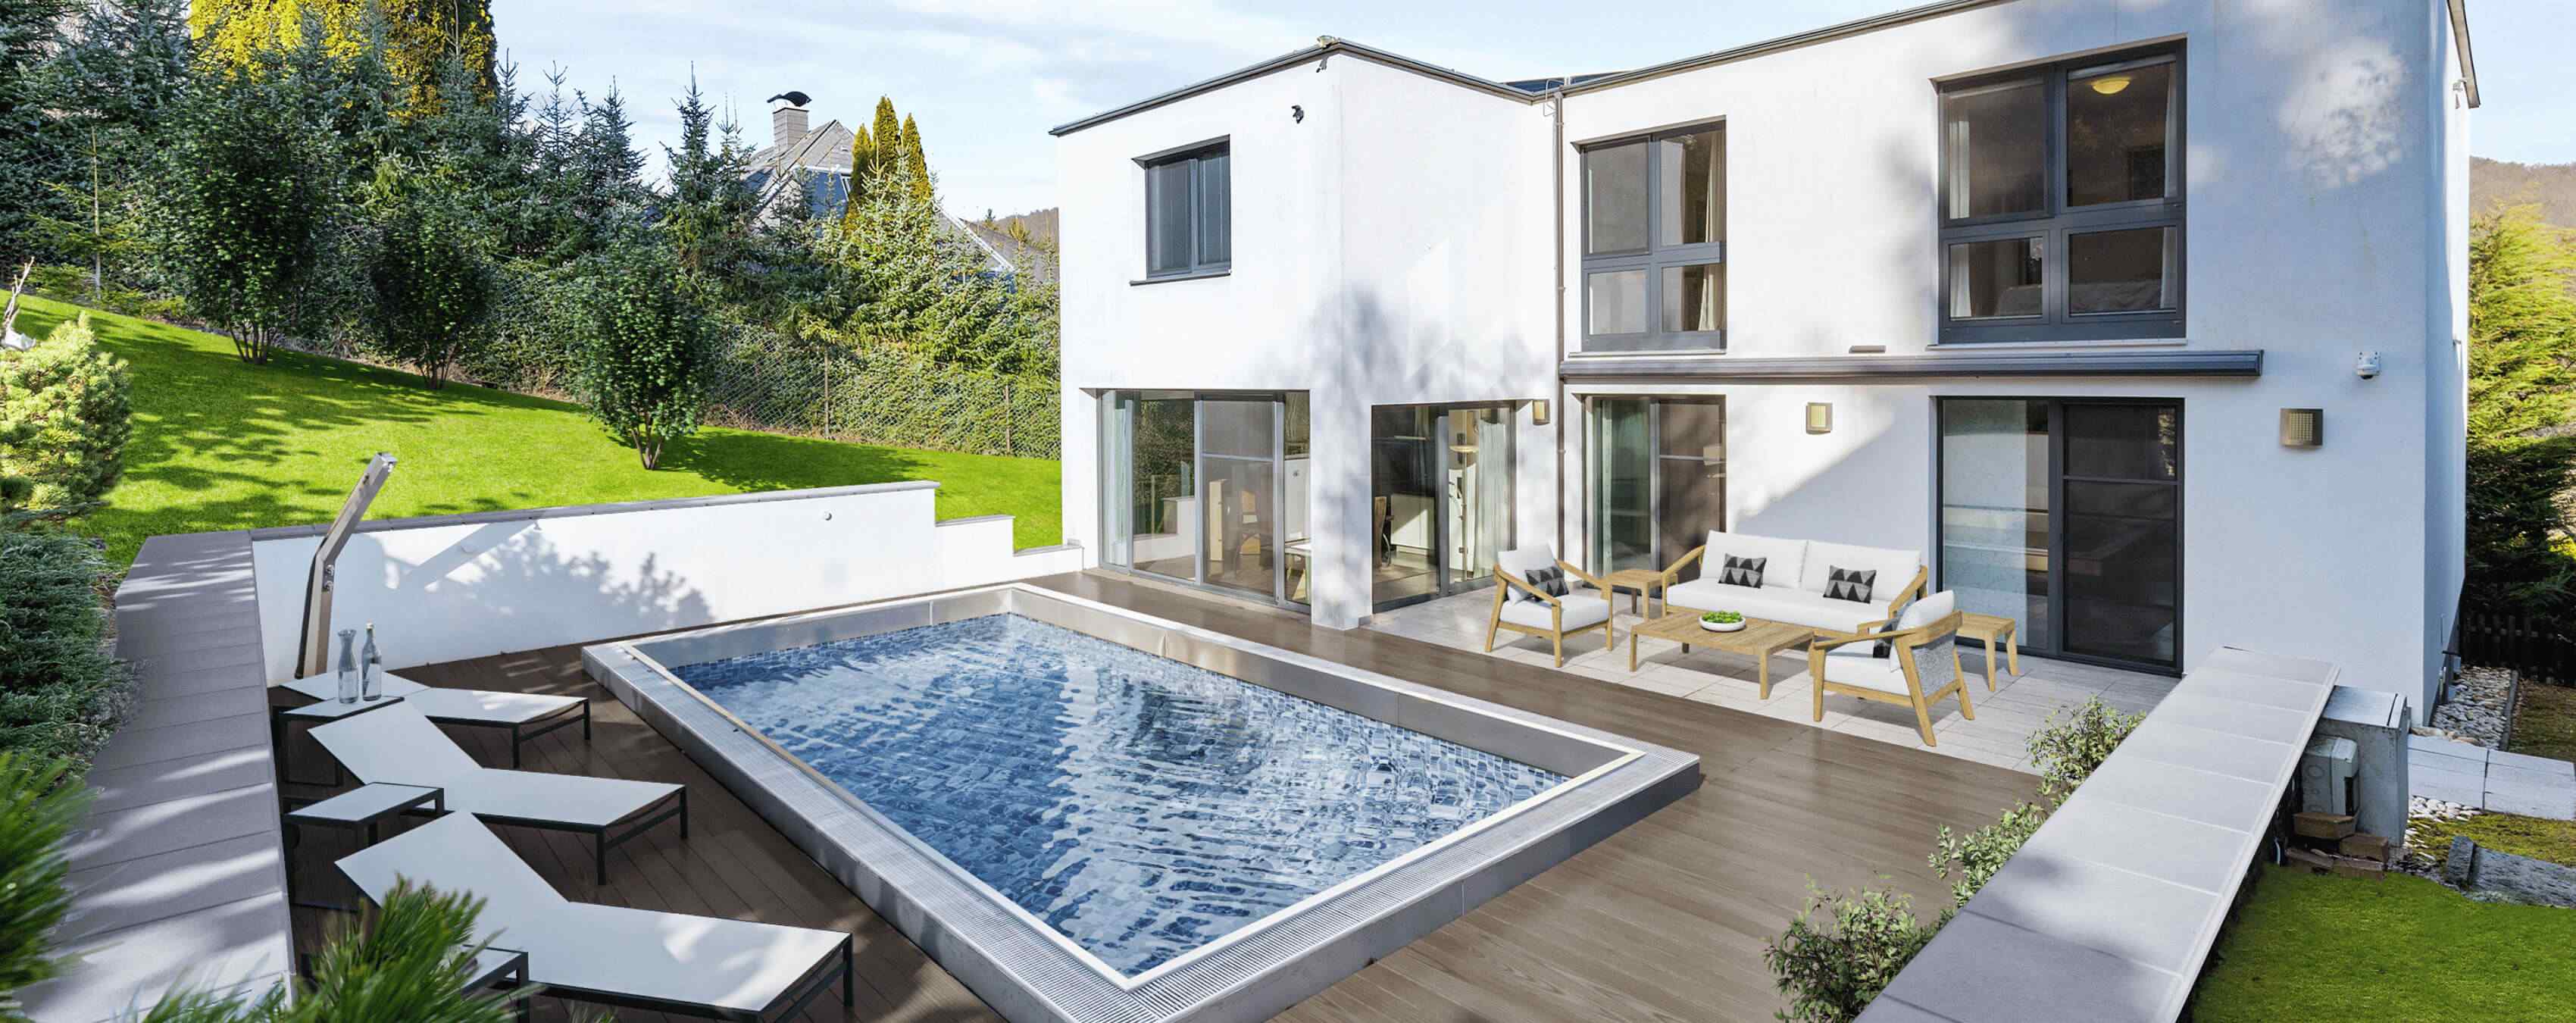 Foto: Moderne Familien-Villa mit Pool, Garten und Doppelgarage